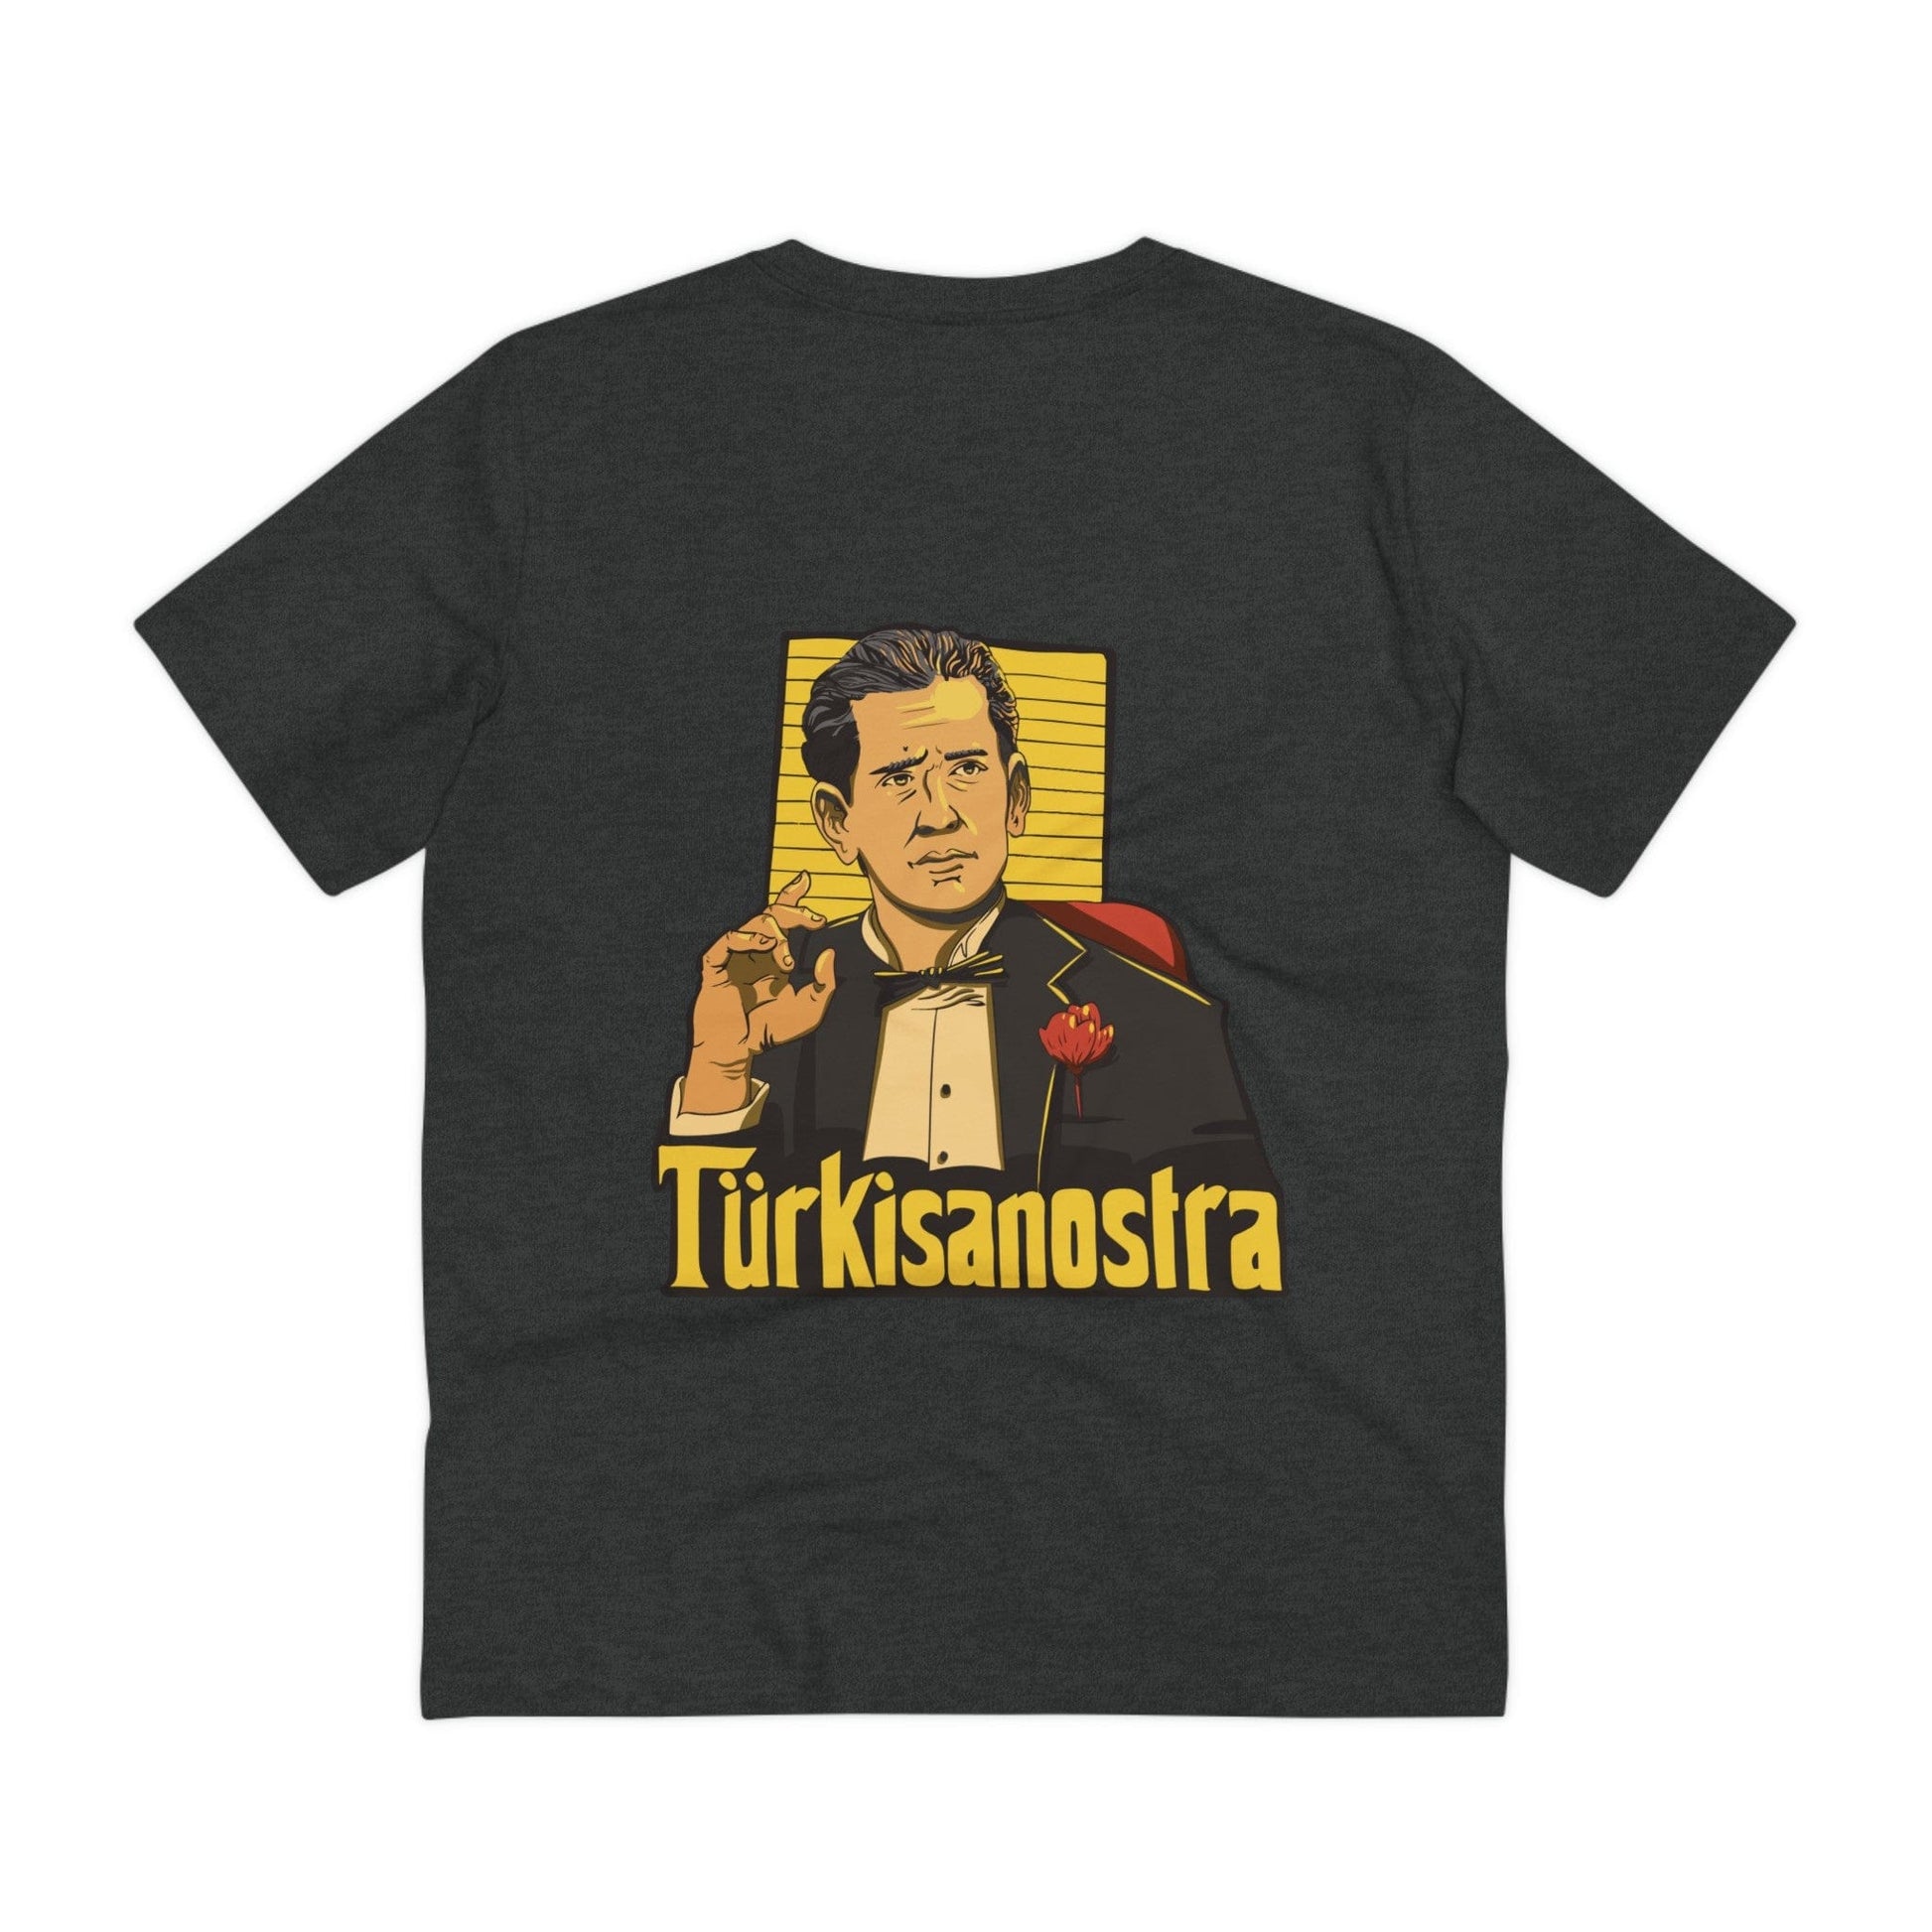 Printify T-Shirt Dark Heather Grey / 2XS Türkisanostra - Film Parodie - Back Design